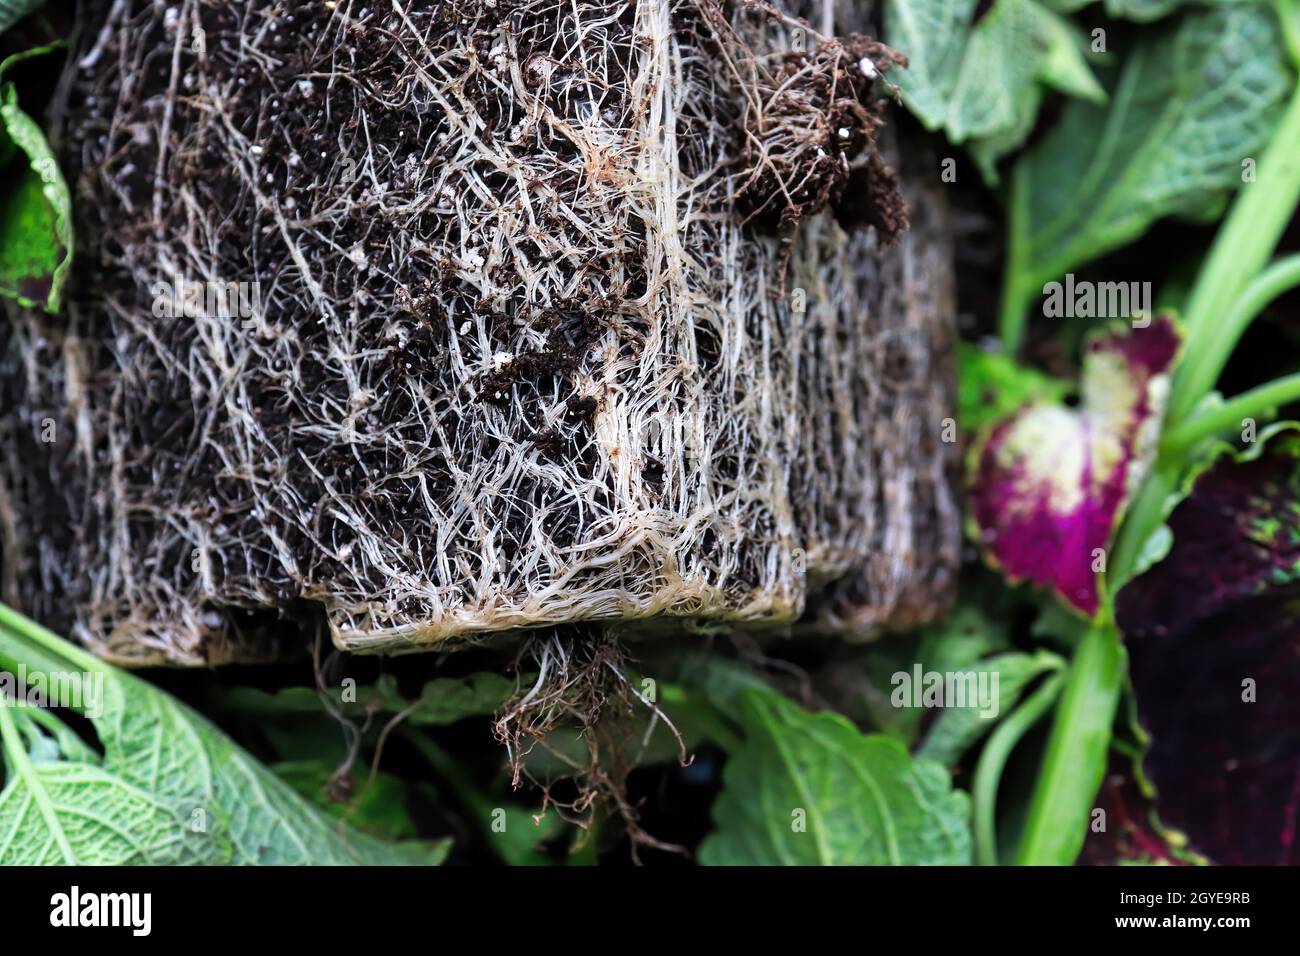 Die quadratische Topfform der Wurzeln in einer wurzelgebundenen Pflanze. Stockfoto